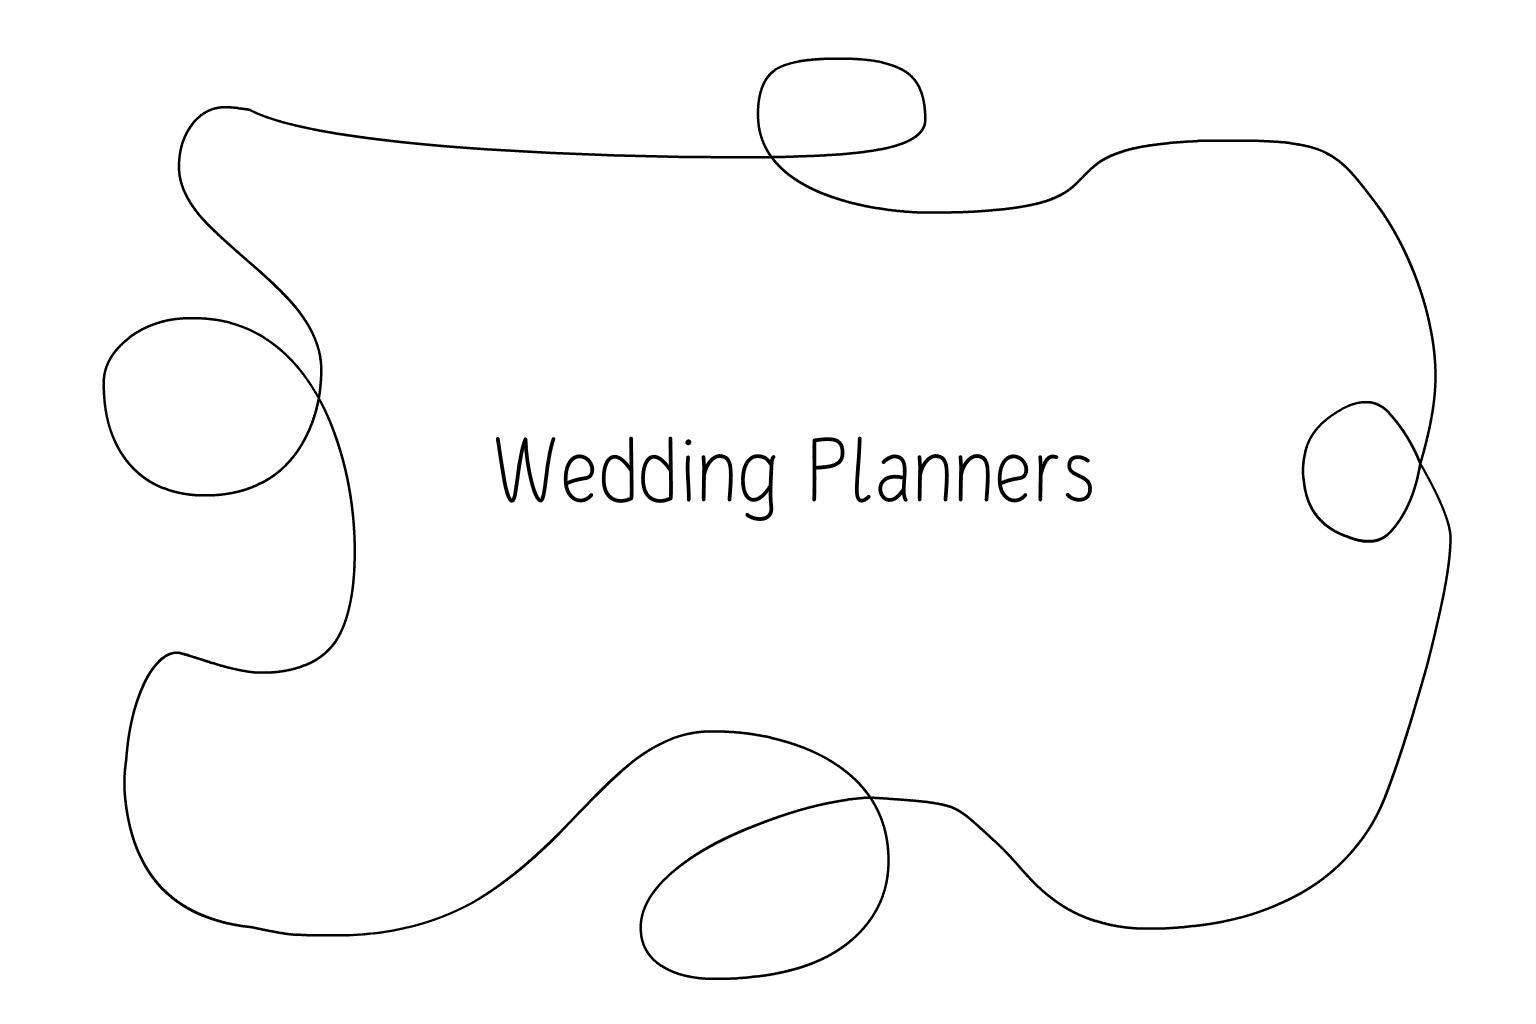 Ilustrace svatby Svatební plánovači